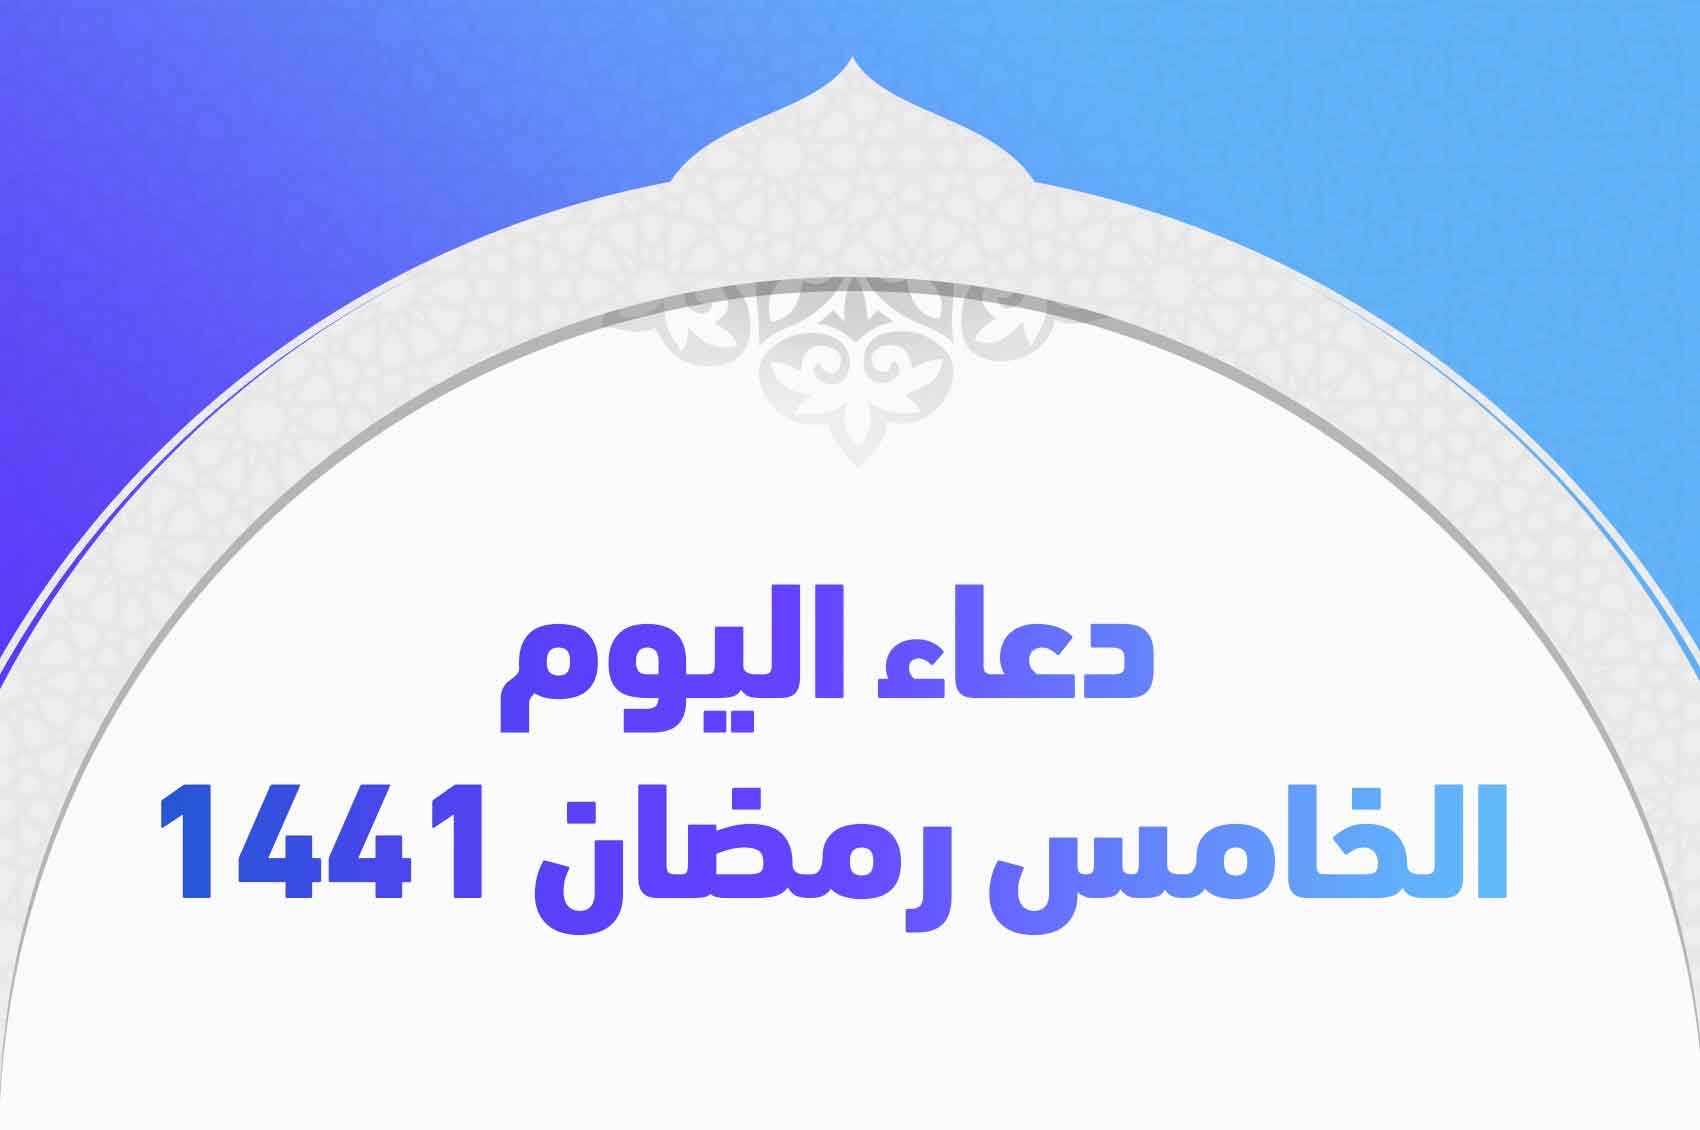 دعاء اليوم الخامس رمضان 1441